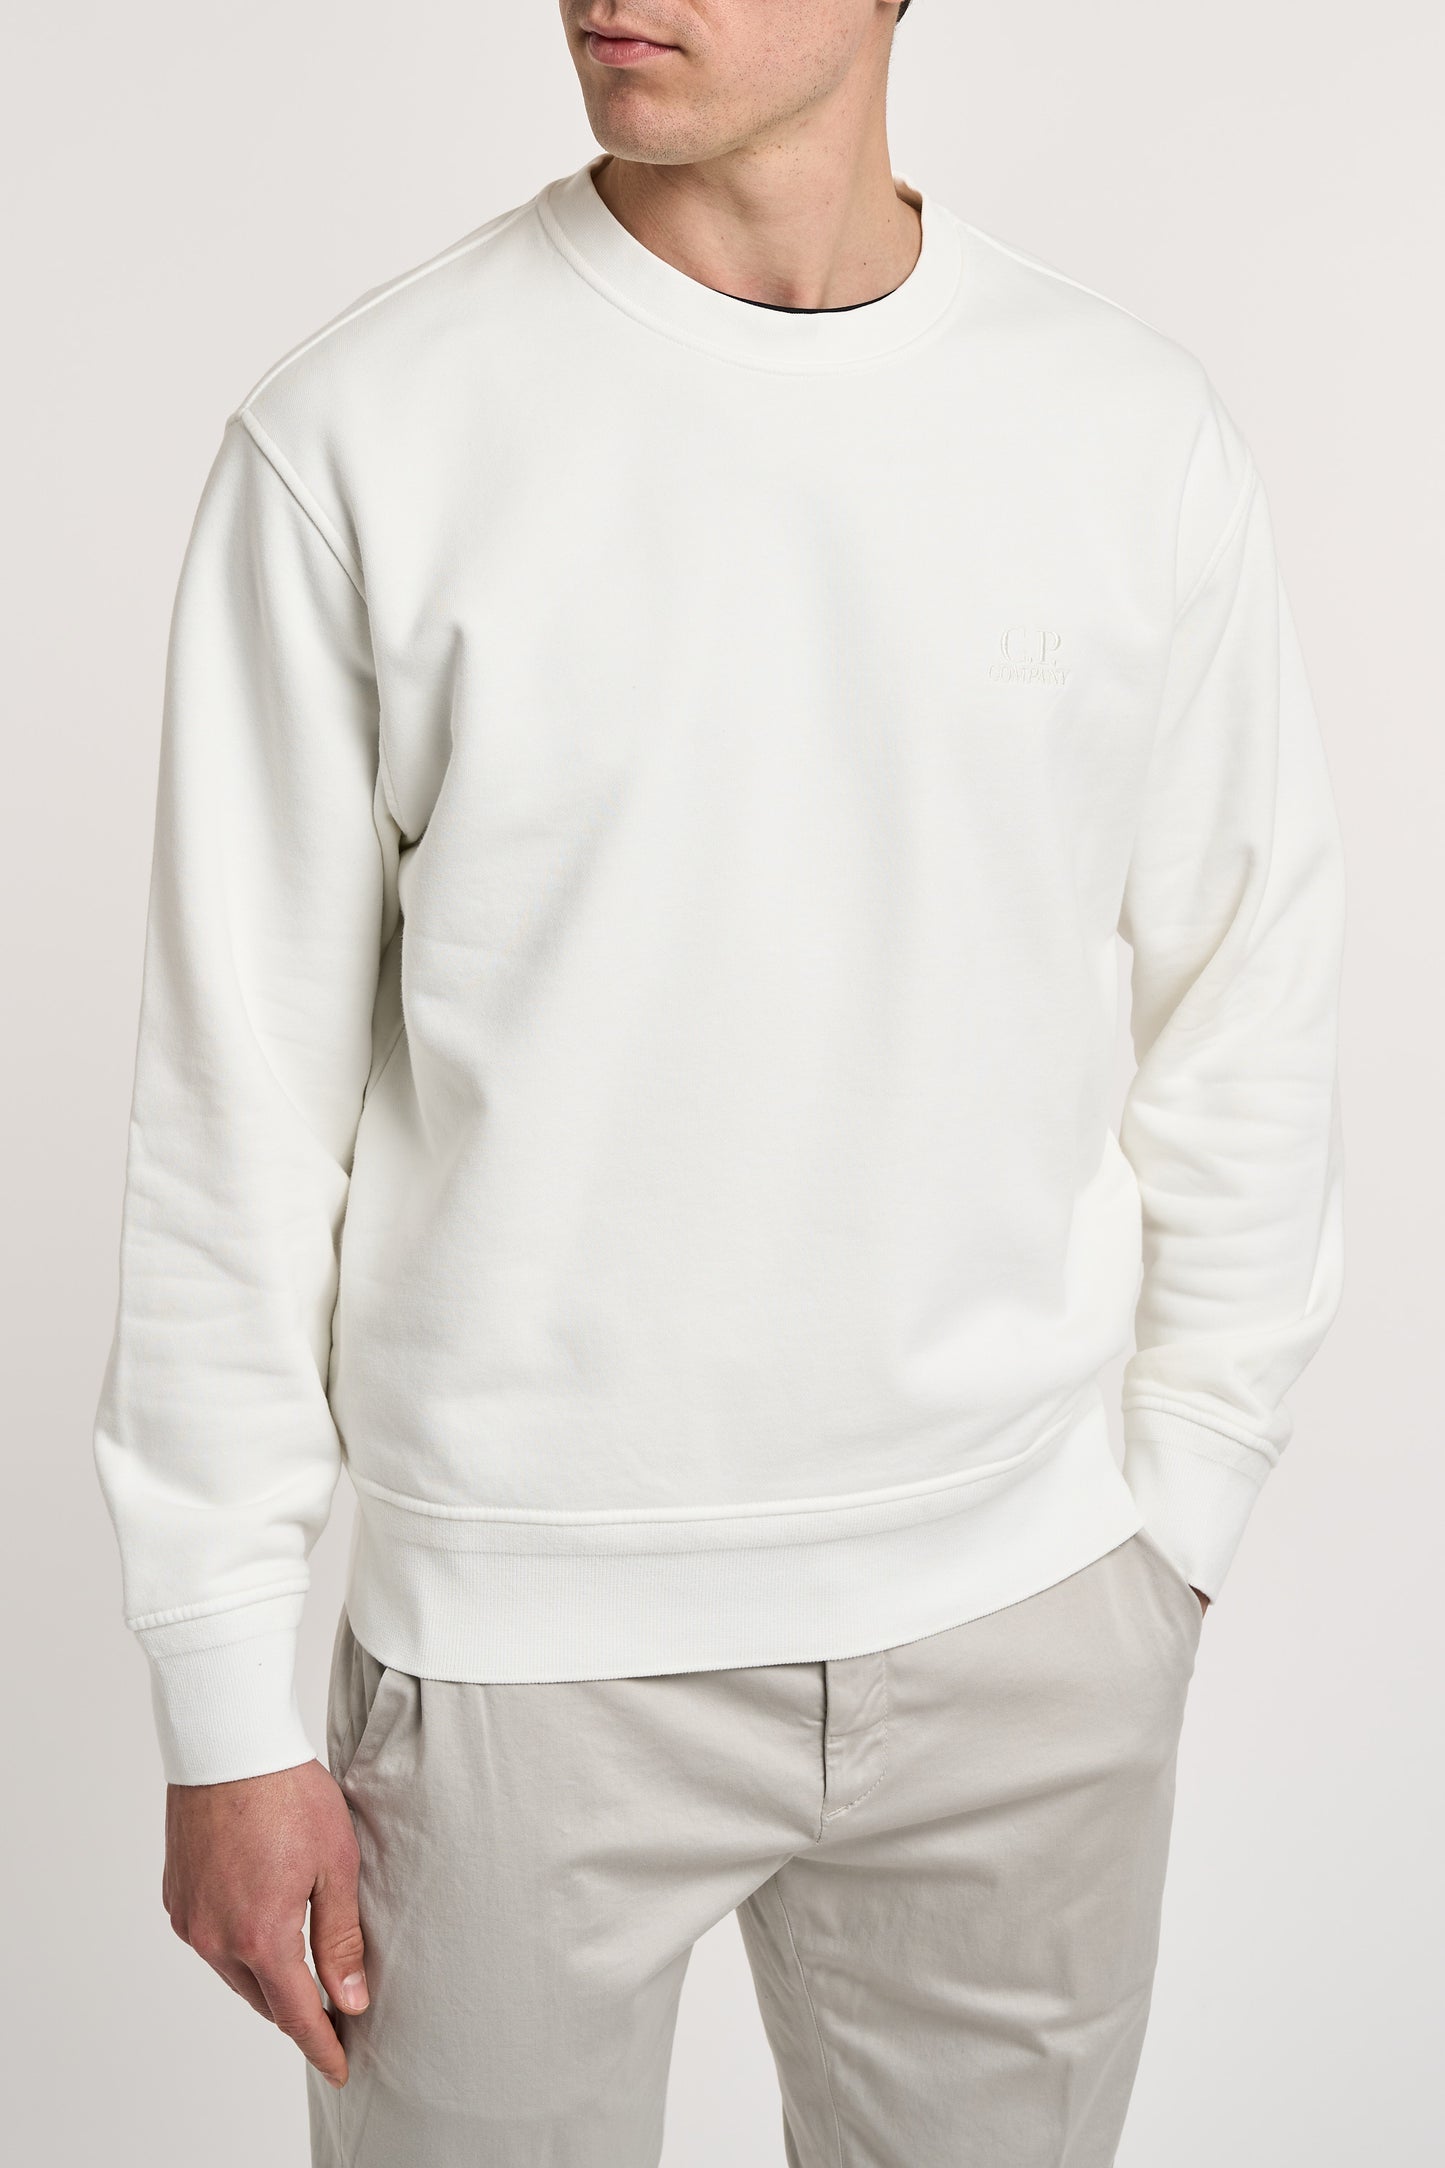  C.p. Company Multicolor Crewneck Sweatshirt 100% Co Bianco Uomo - 3